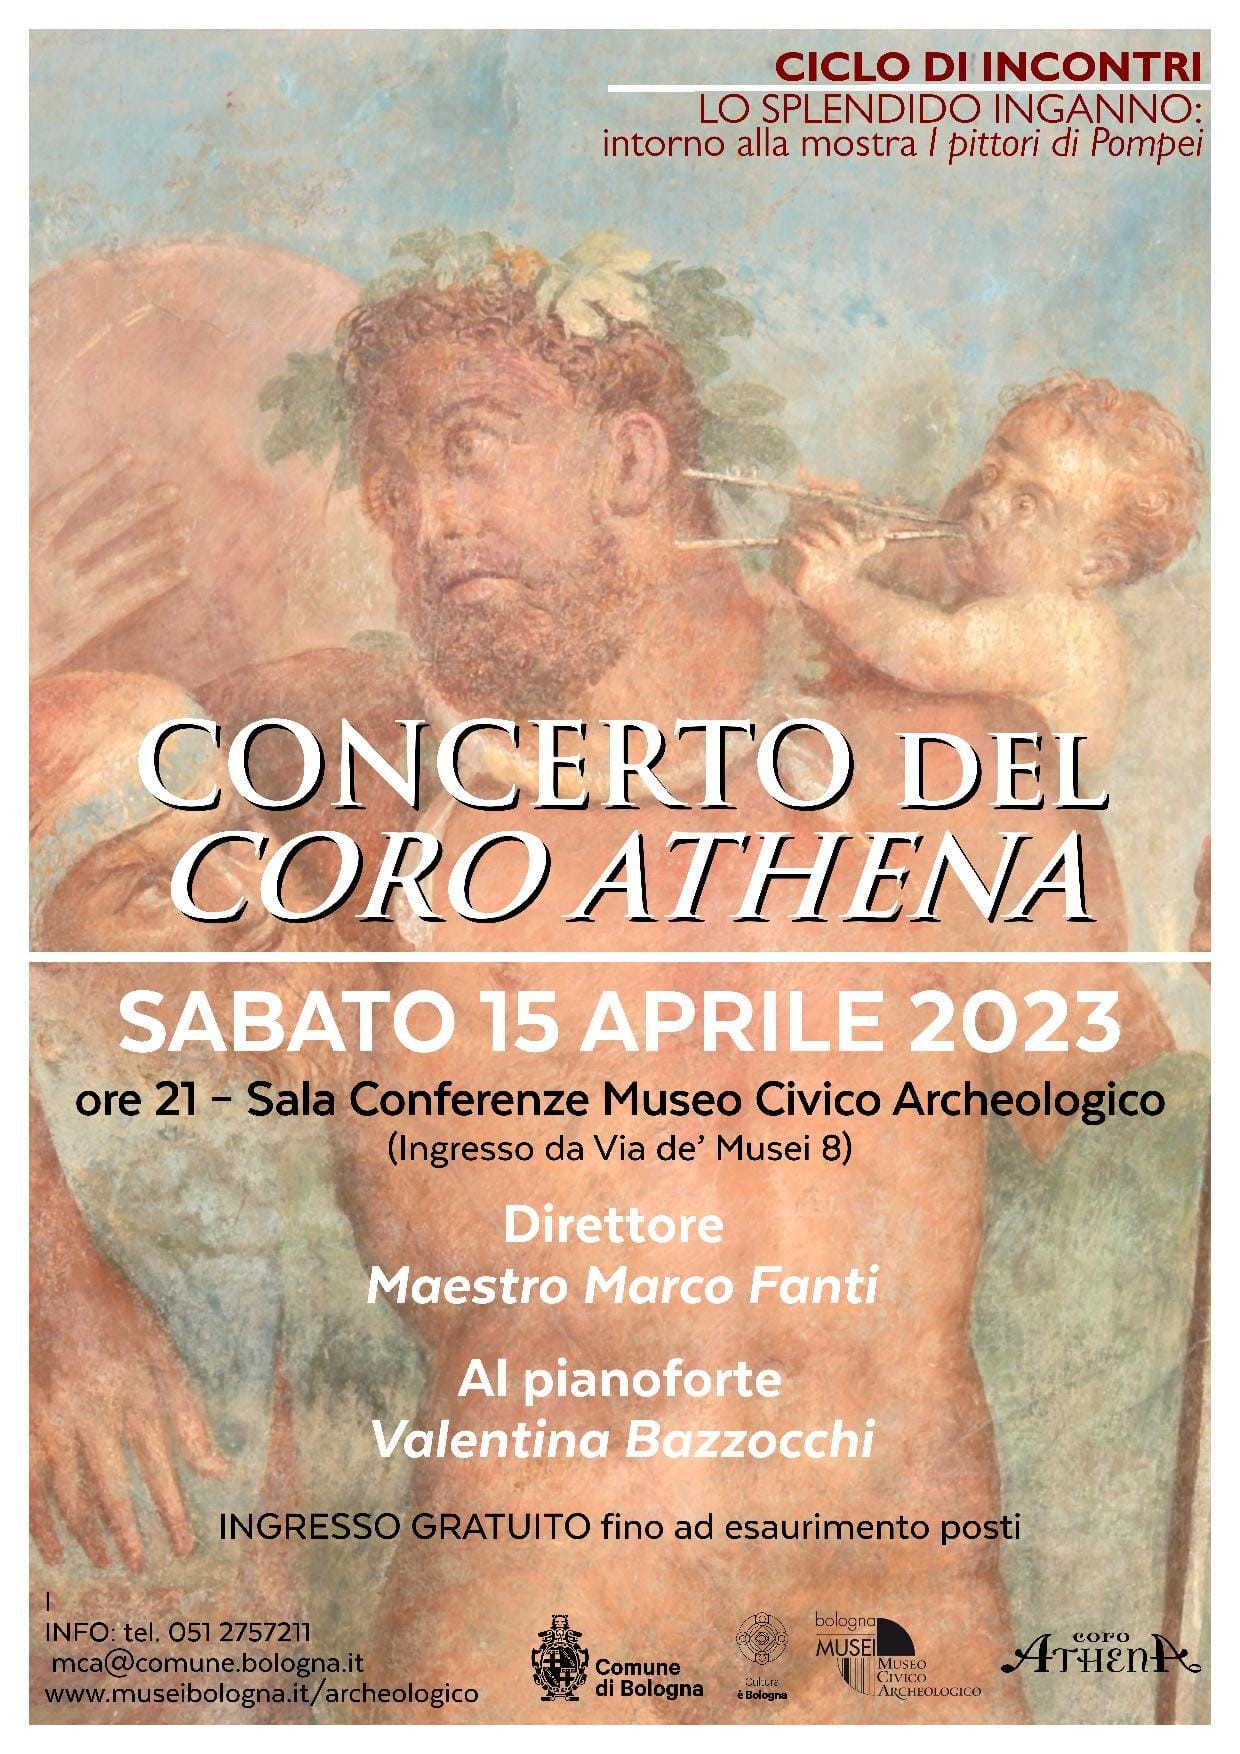 2023 Pittori Pompei Concerto Coro Athena 15.04.23 ok